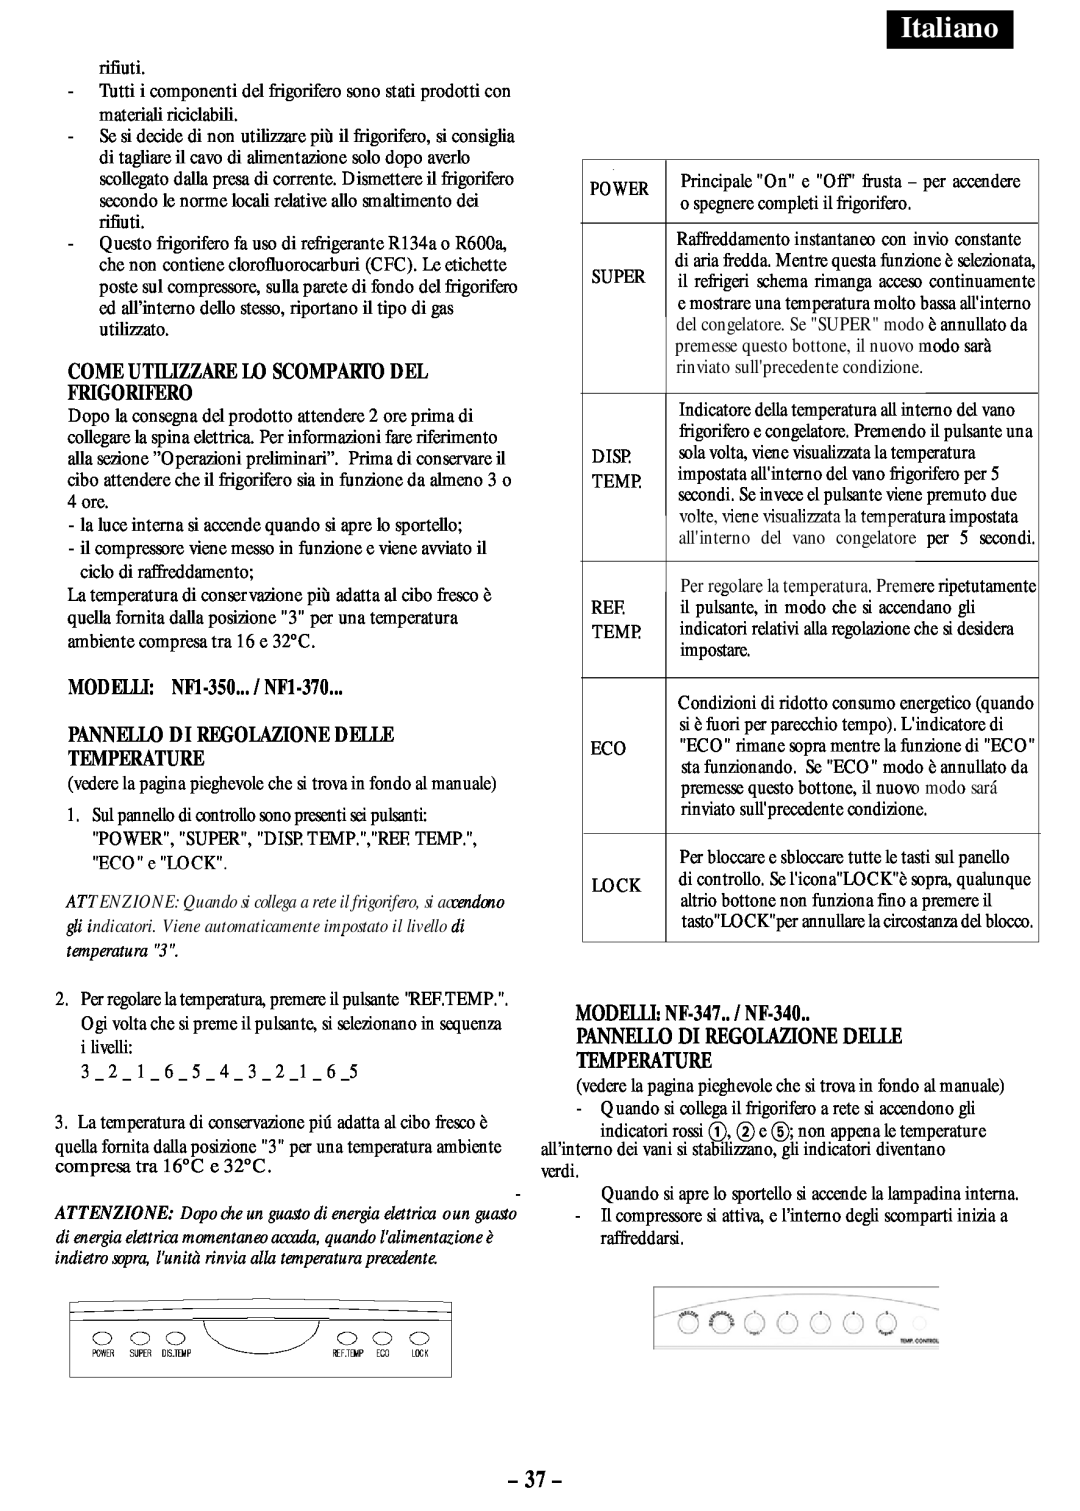 Opteka NF-340, NF-347 manual Italiano, Come Utilizzare Lo Scomparto Del Frigorifero, MODELLI: NF1-350... / NF1-370 